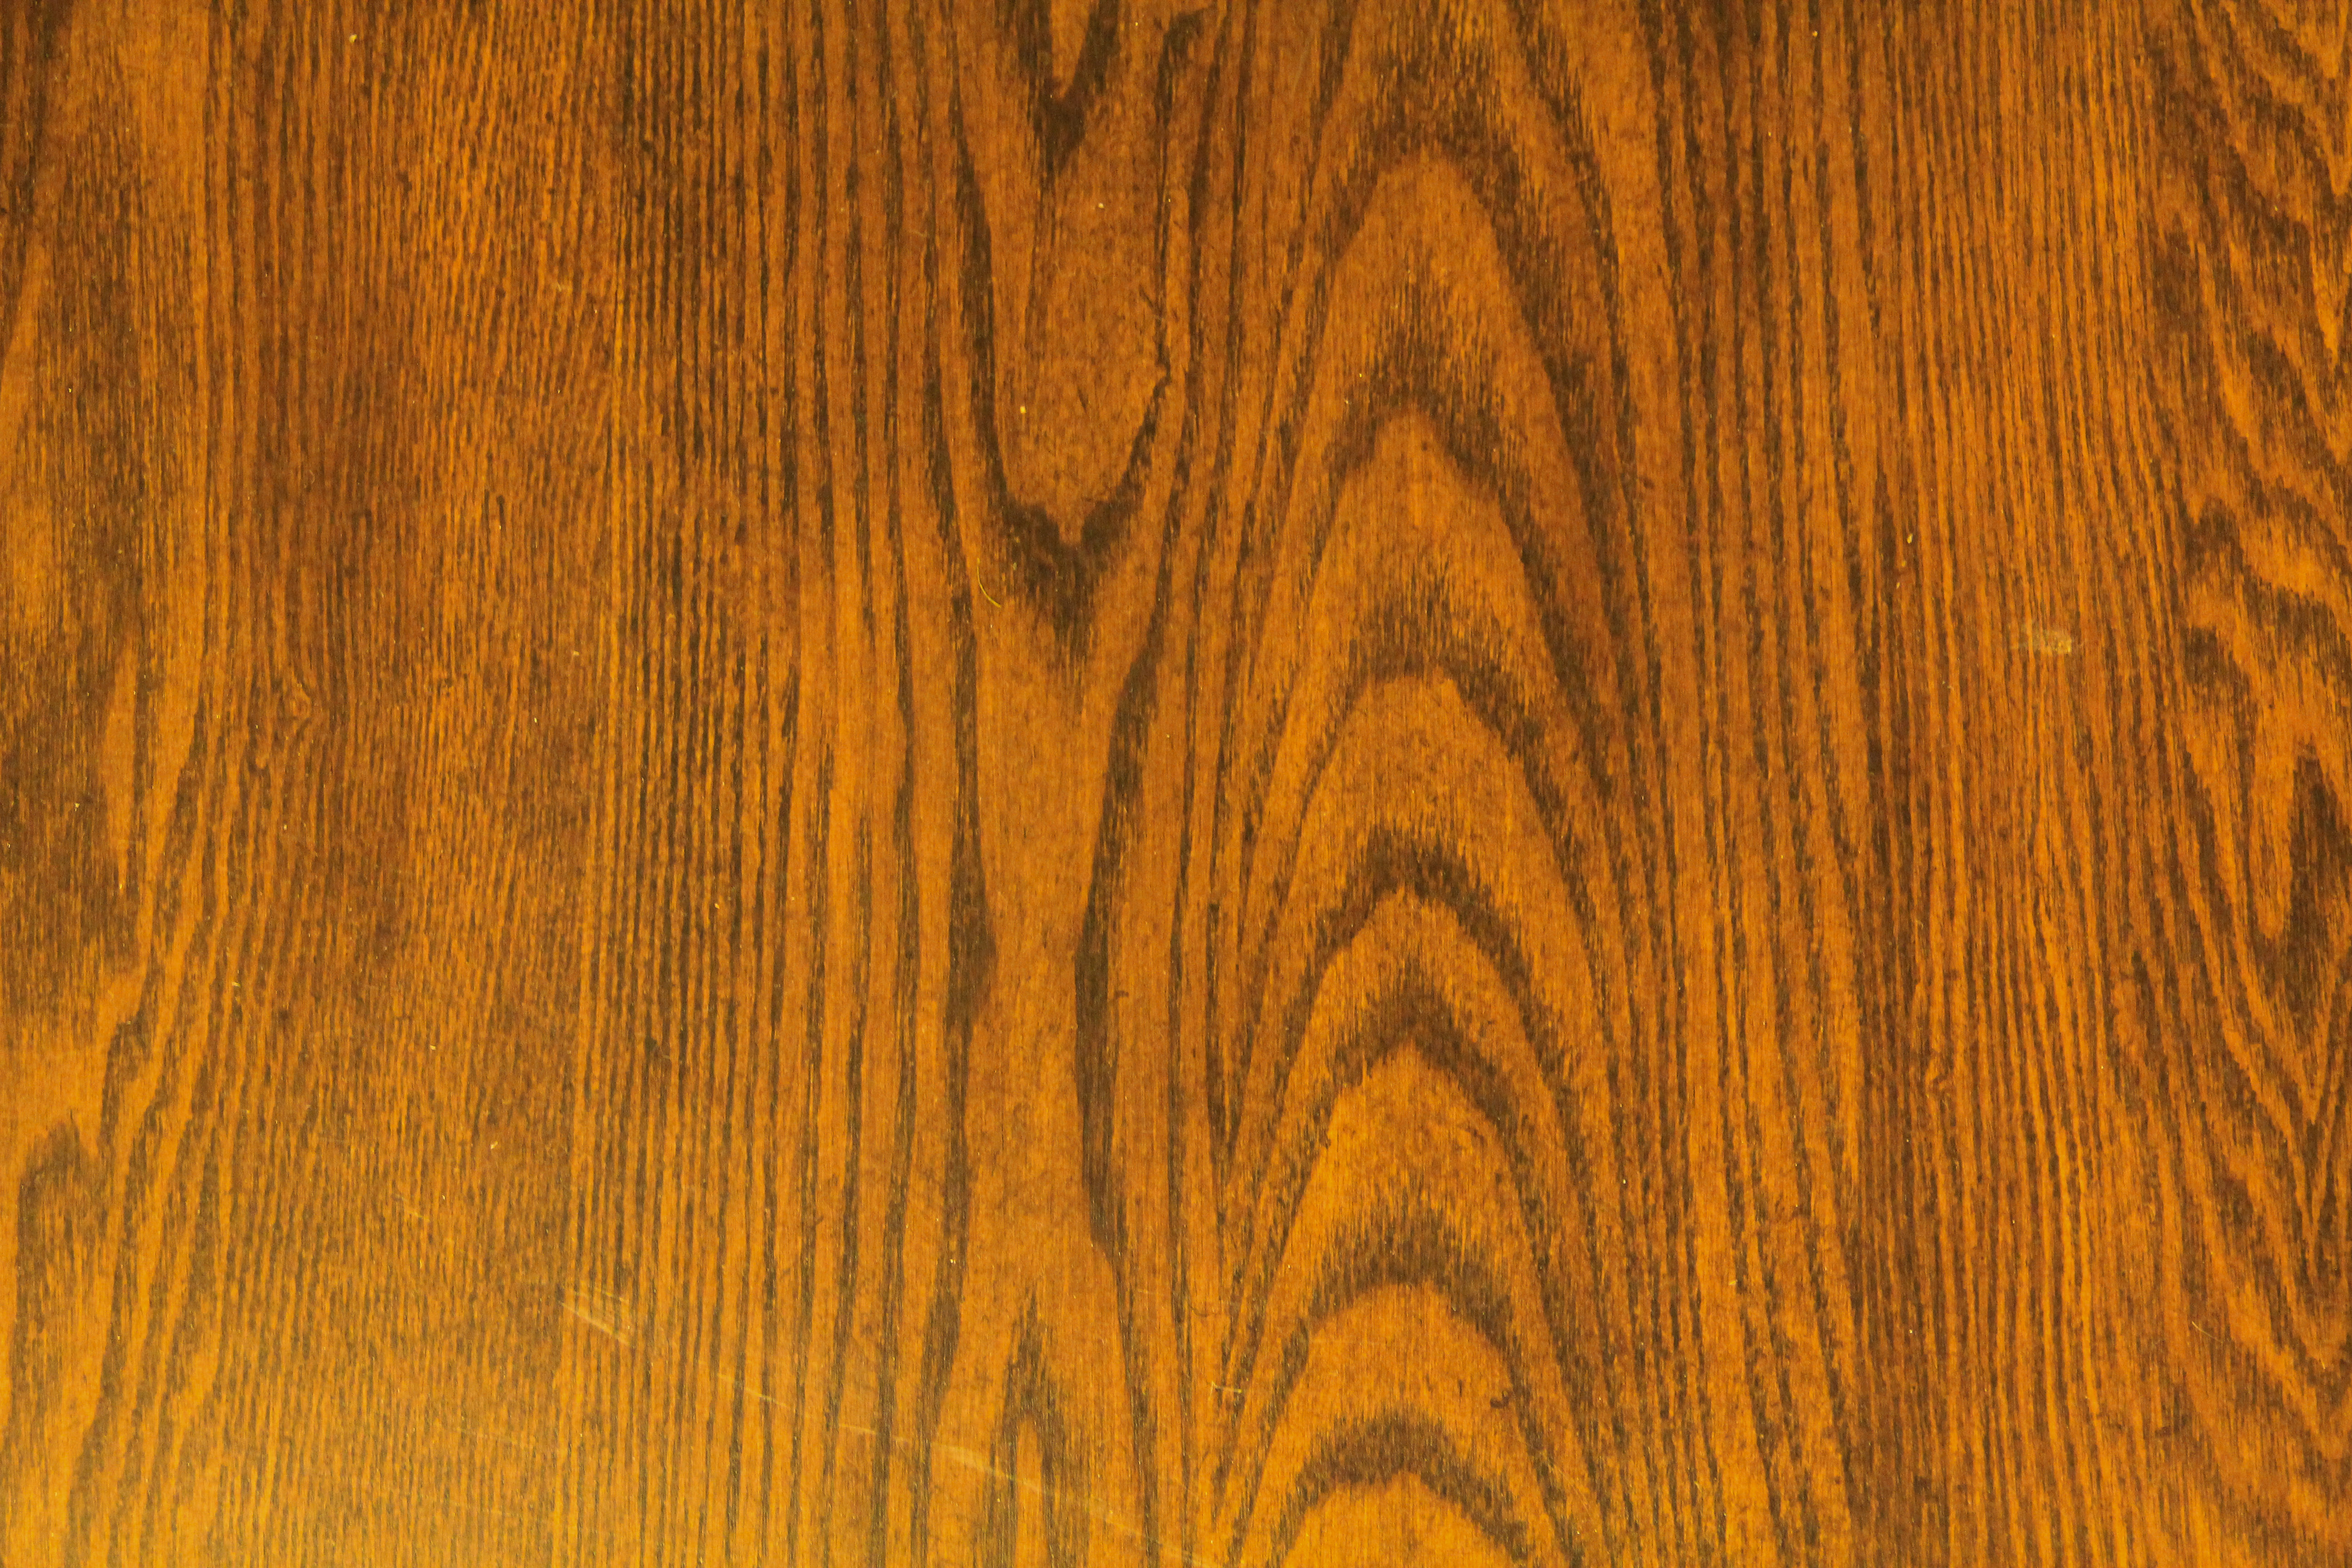 wood panel texture surface oak counter stock wallpaper - TextureX ...